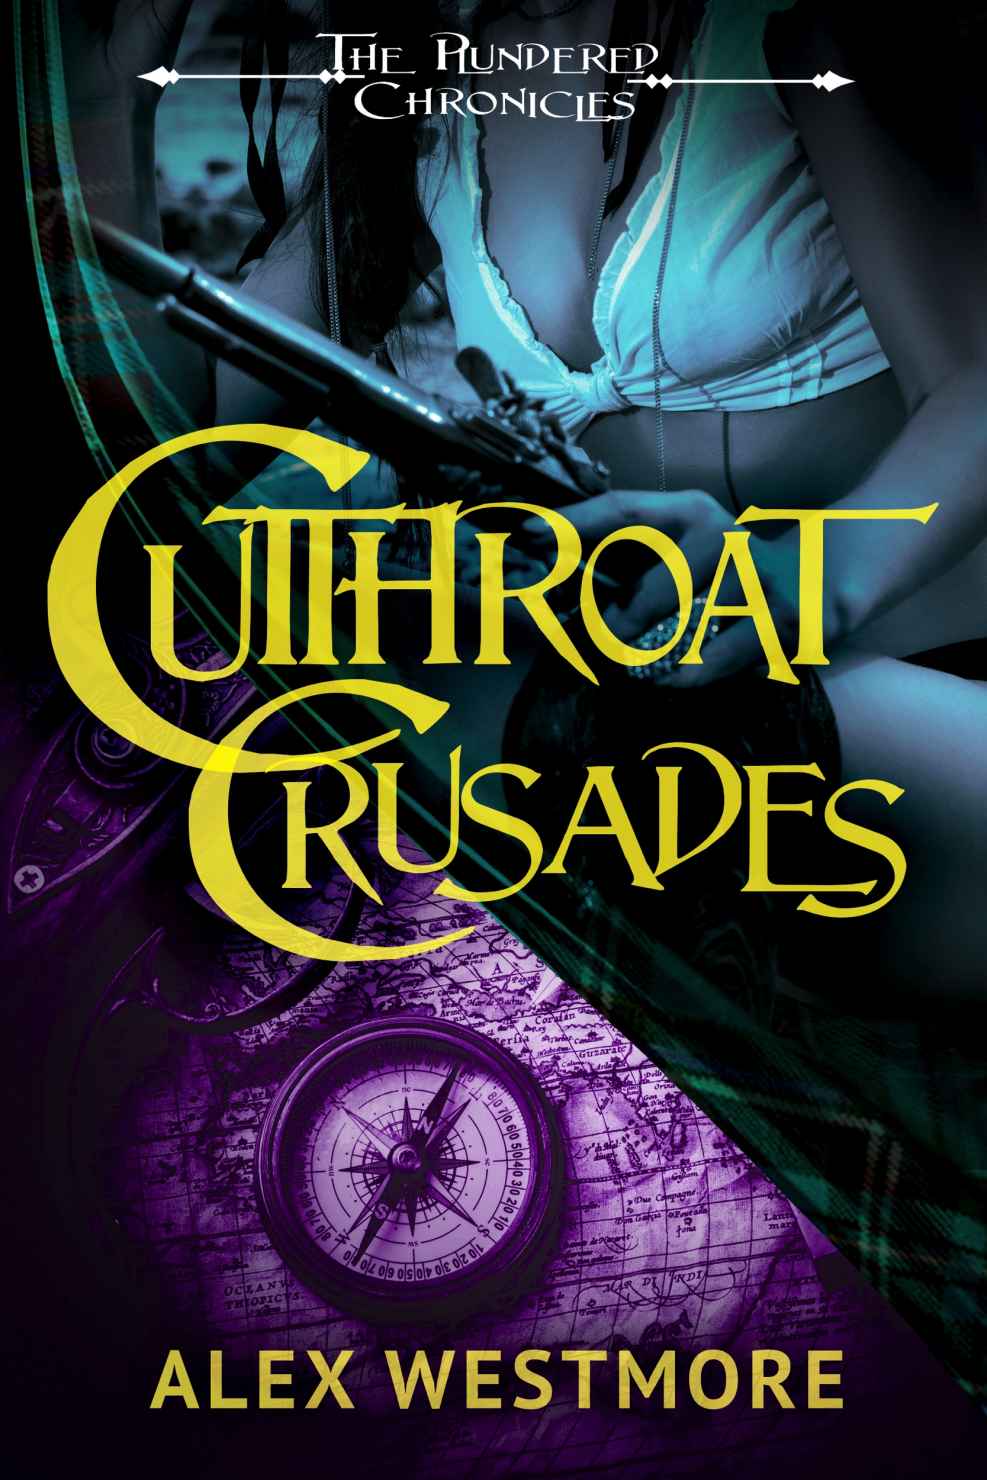 Cutthroat Crusades